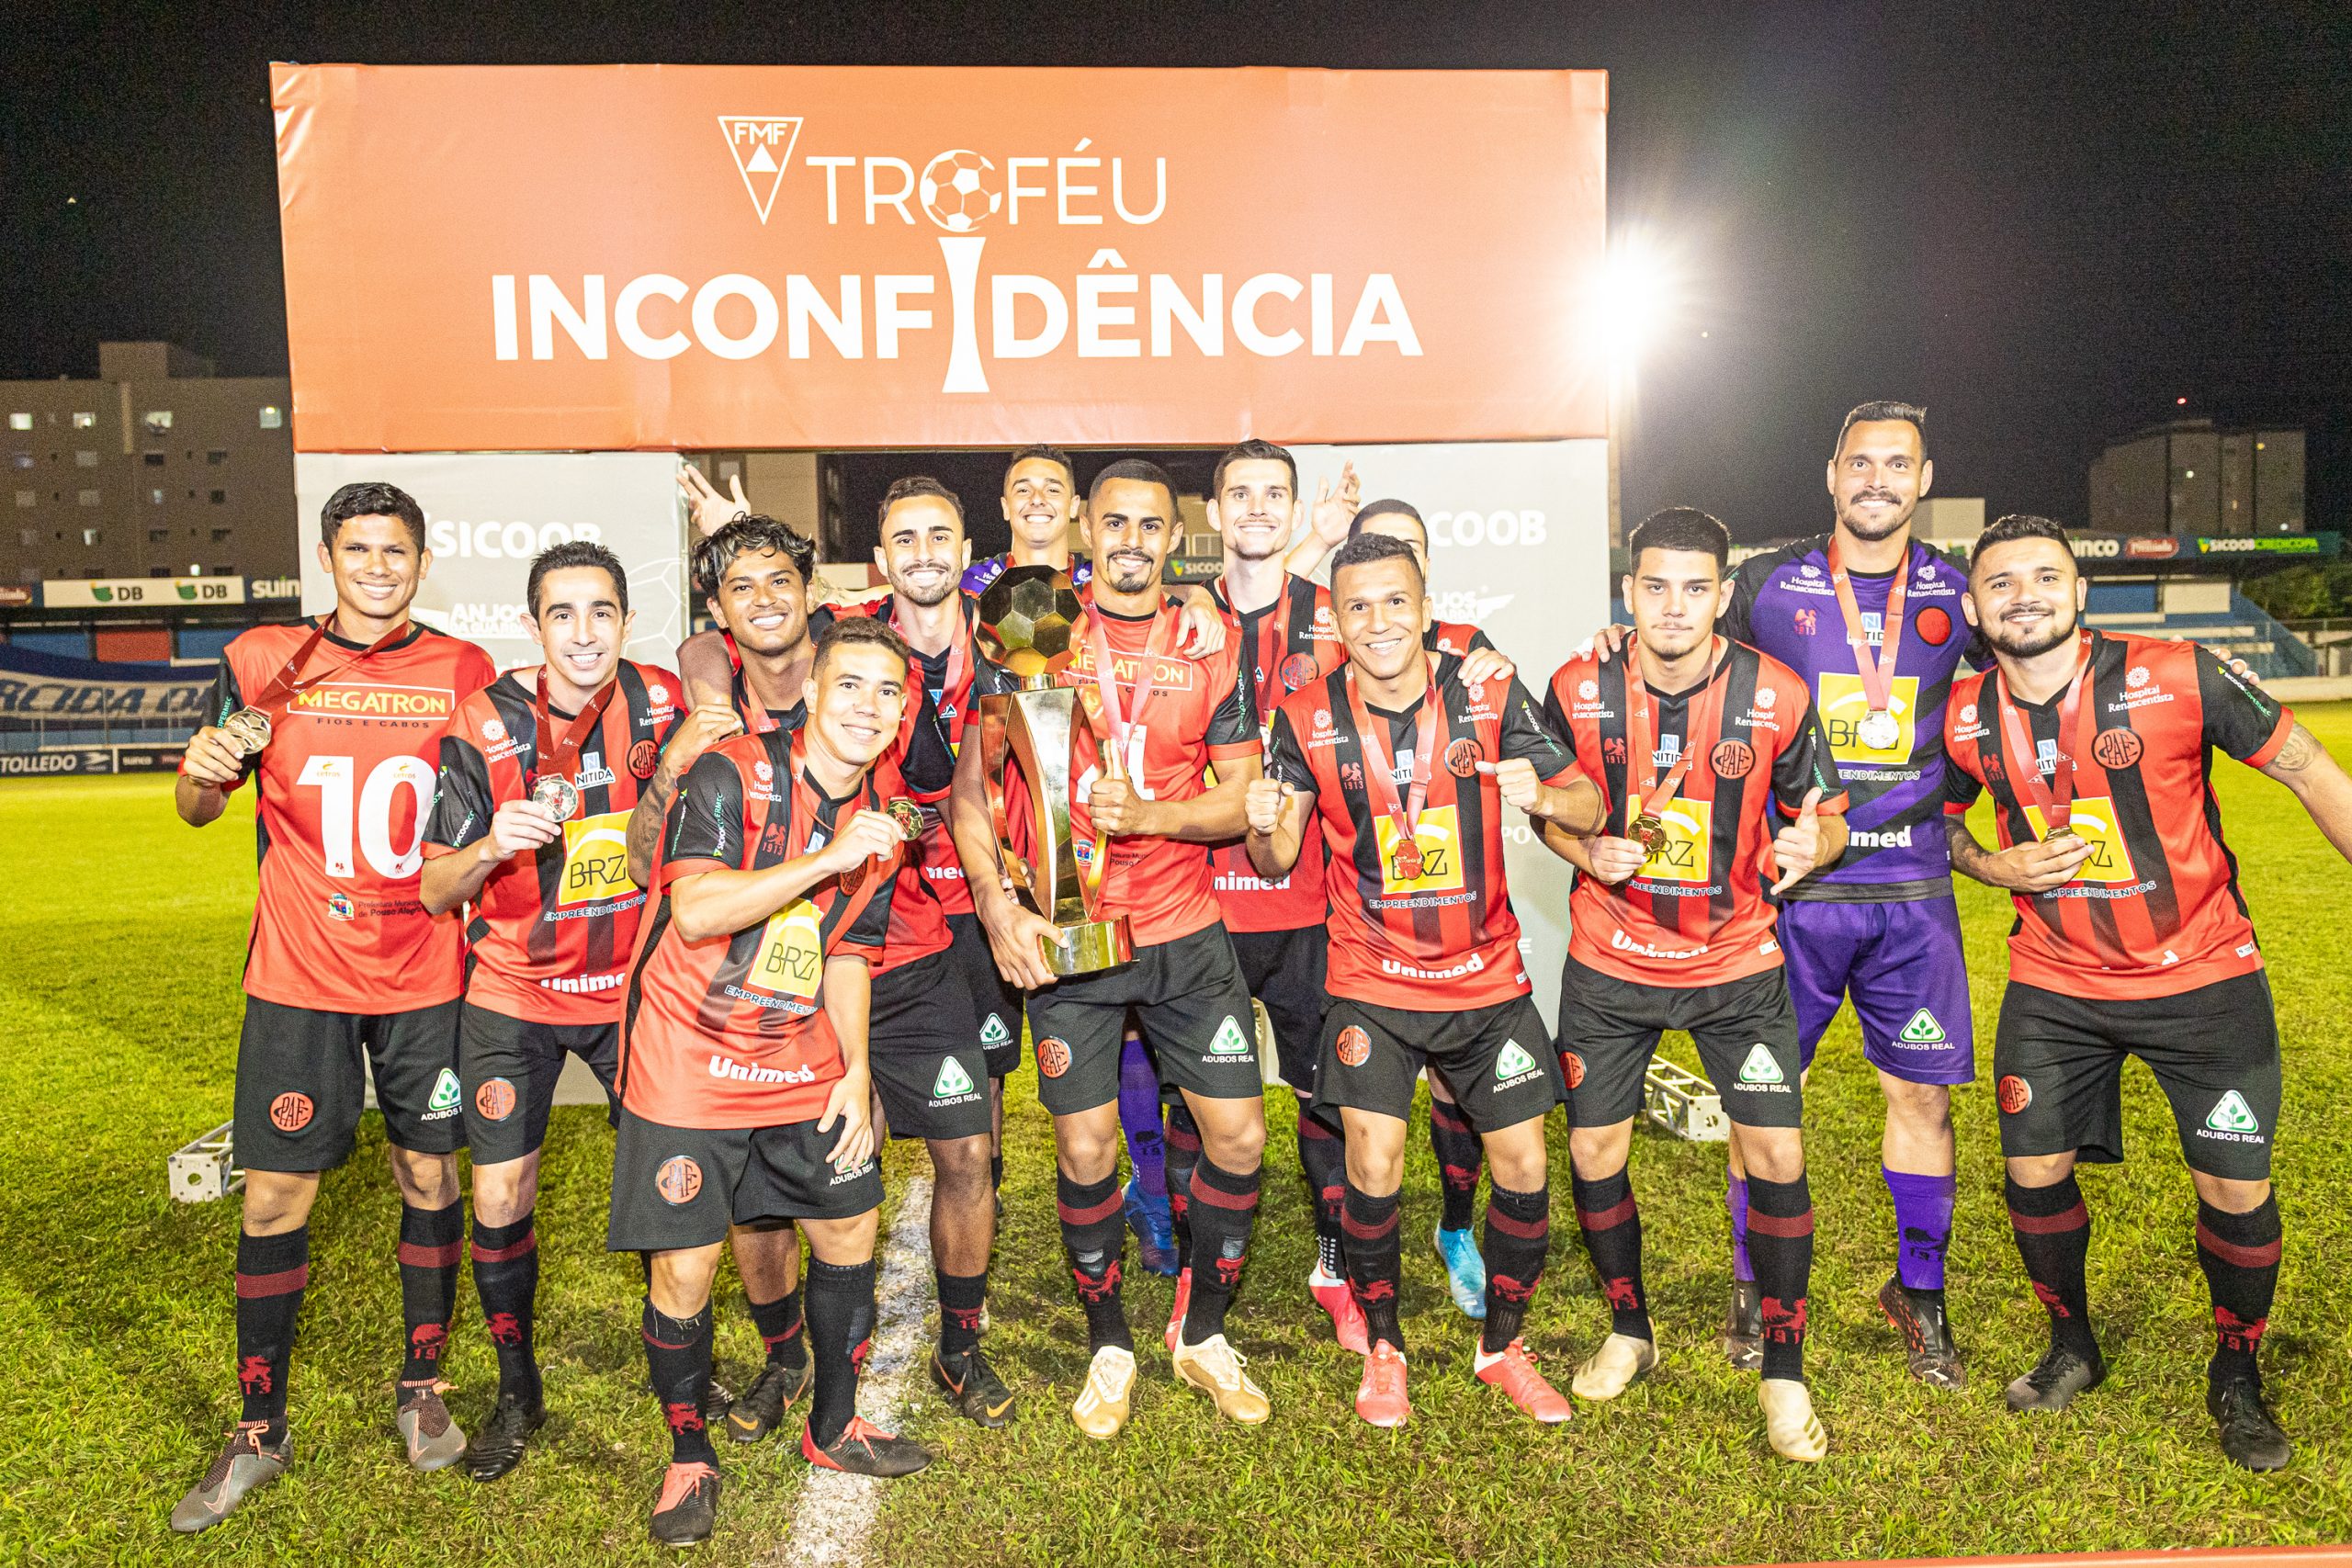 Pouso Alegre conquistou o Troféu Inconfidência em 2021. Foto: BH Foto / FMF / Flickr